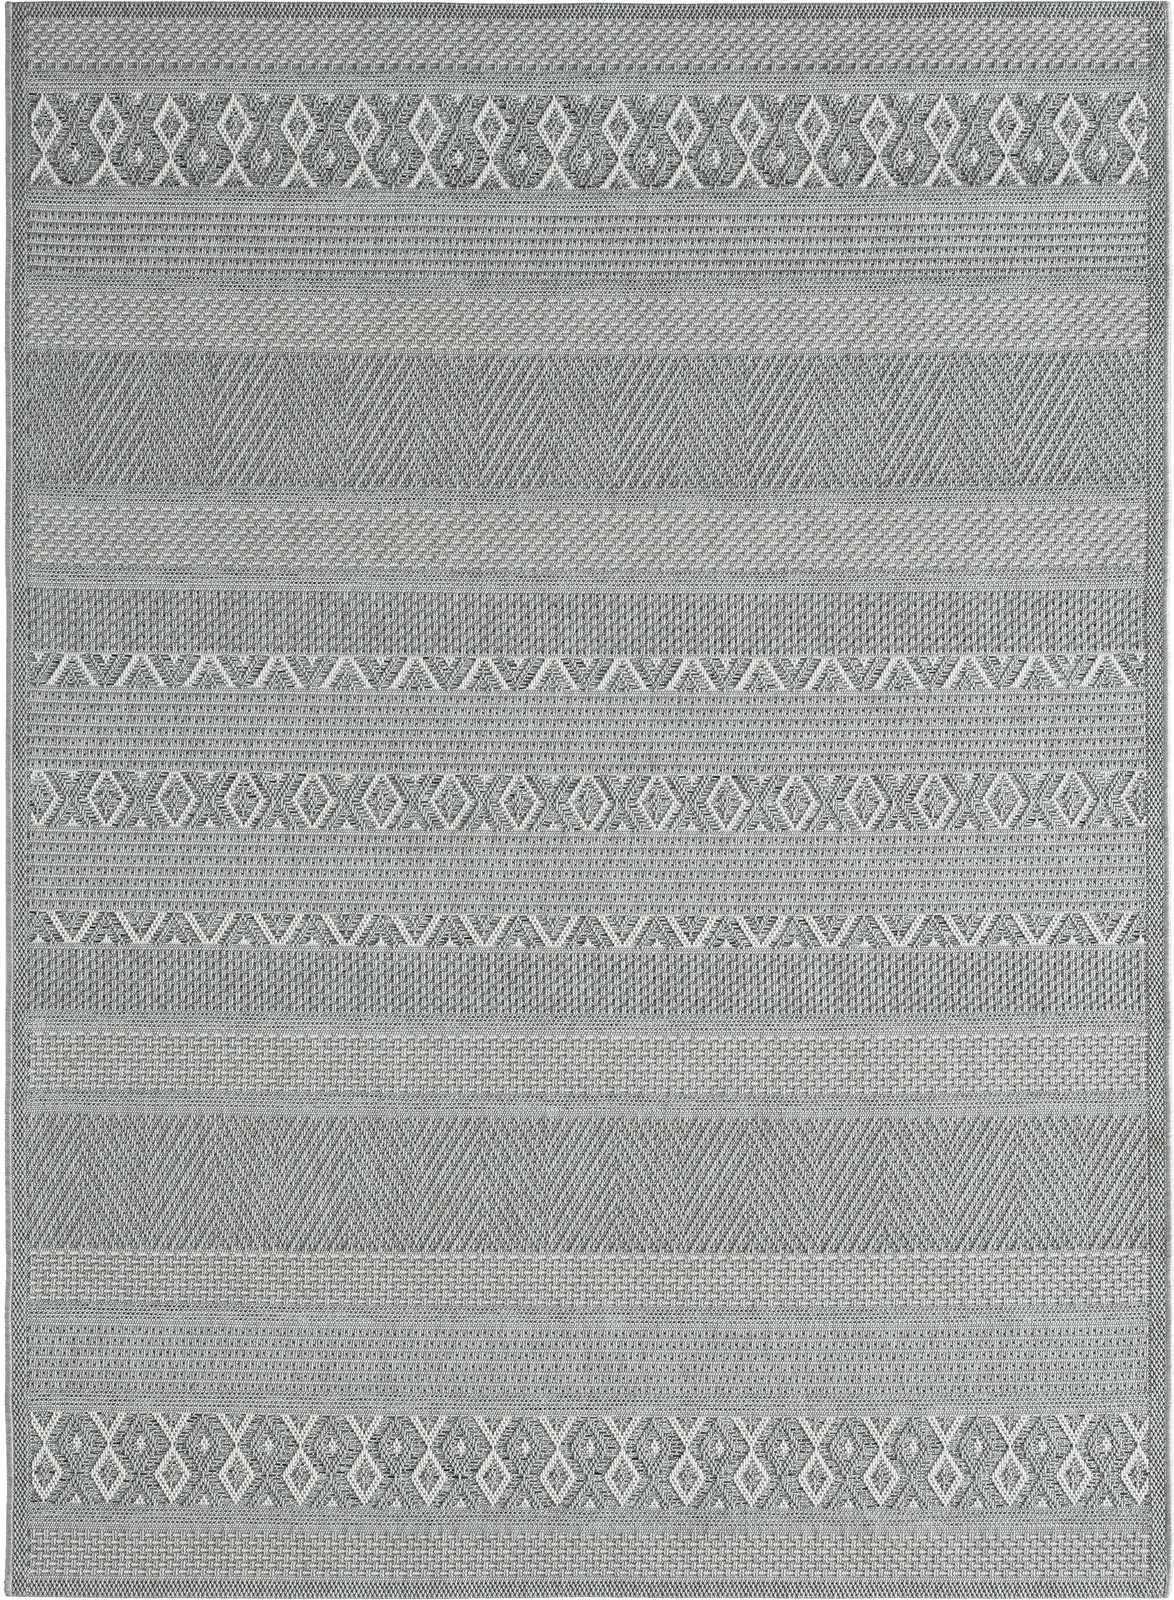             Schlicht Bemusterter Outdoor Teppich in Grau – 220 x 160 cm
        